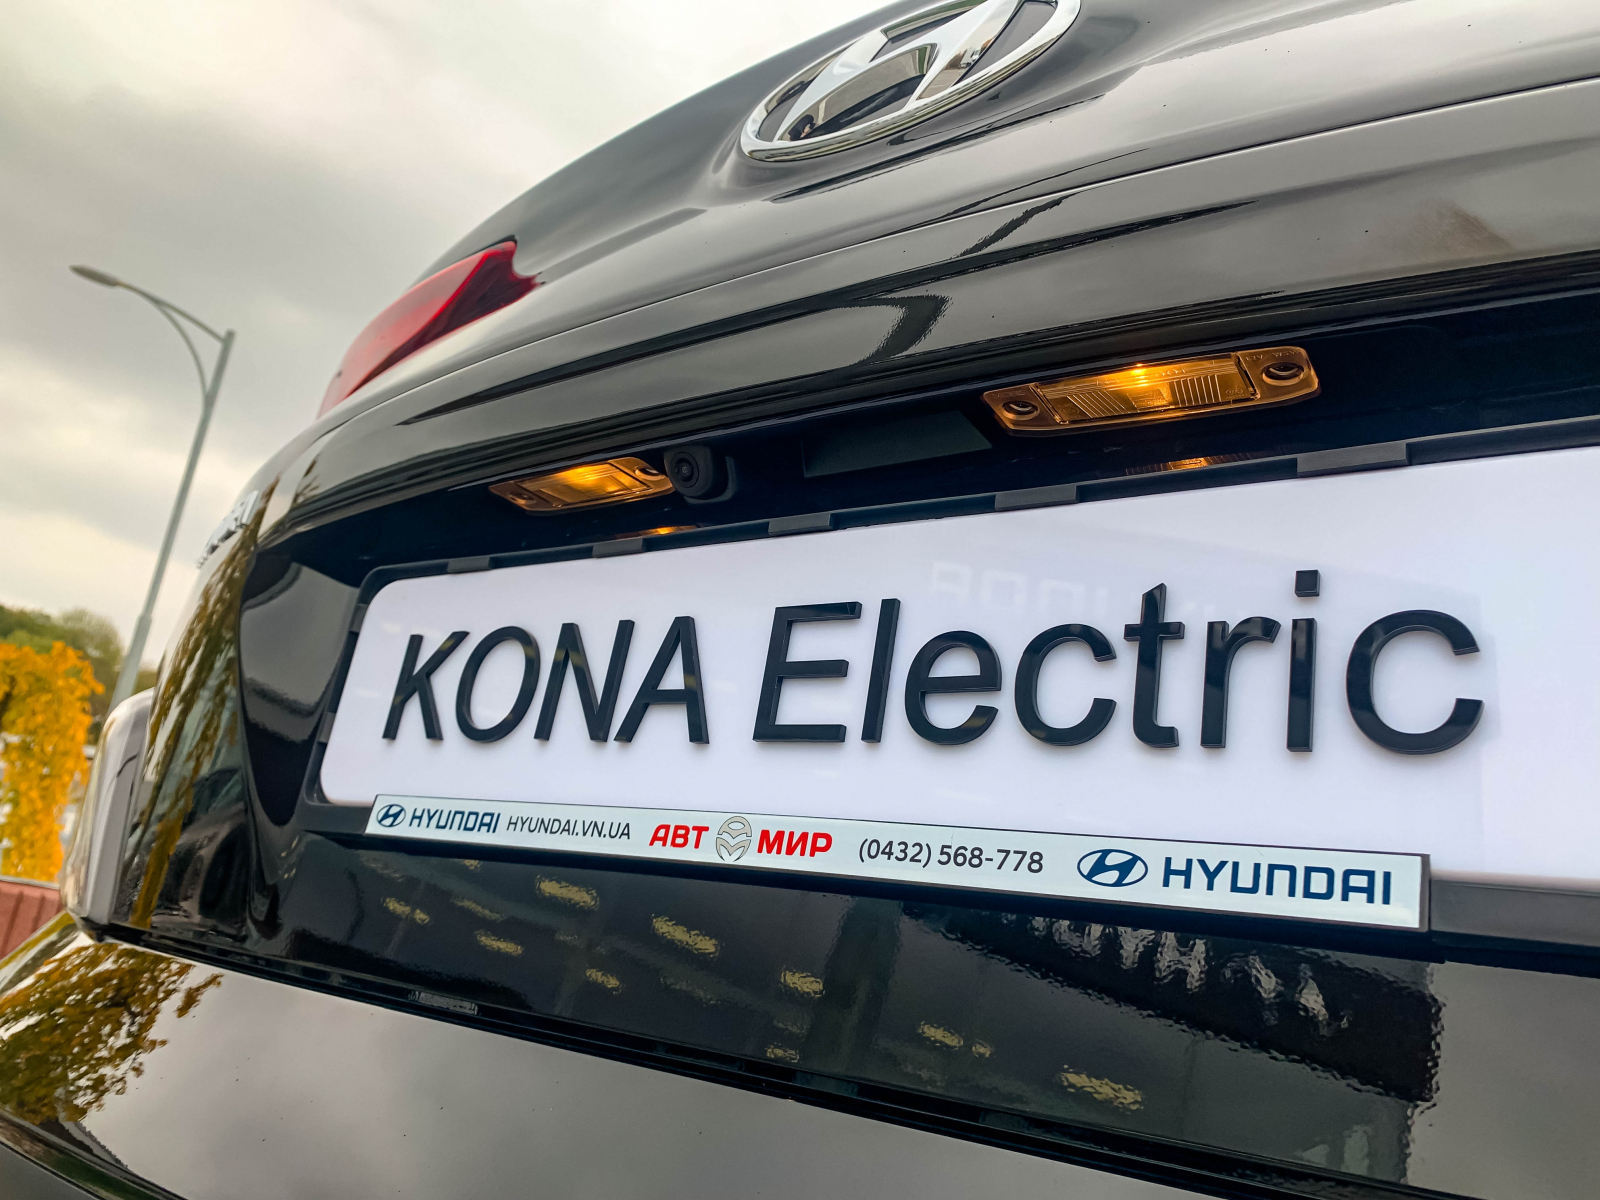 Нова KONA Electric FL Dynamic. До кращого. До електрифікації. | Богдан-Авто Запорожье - фото 13